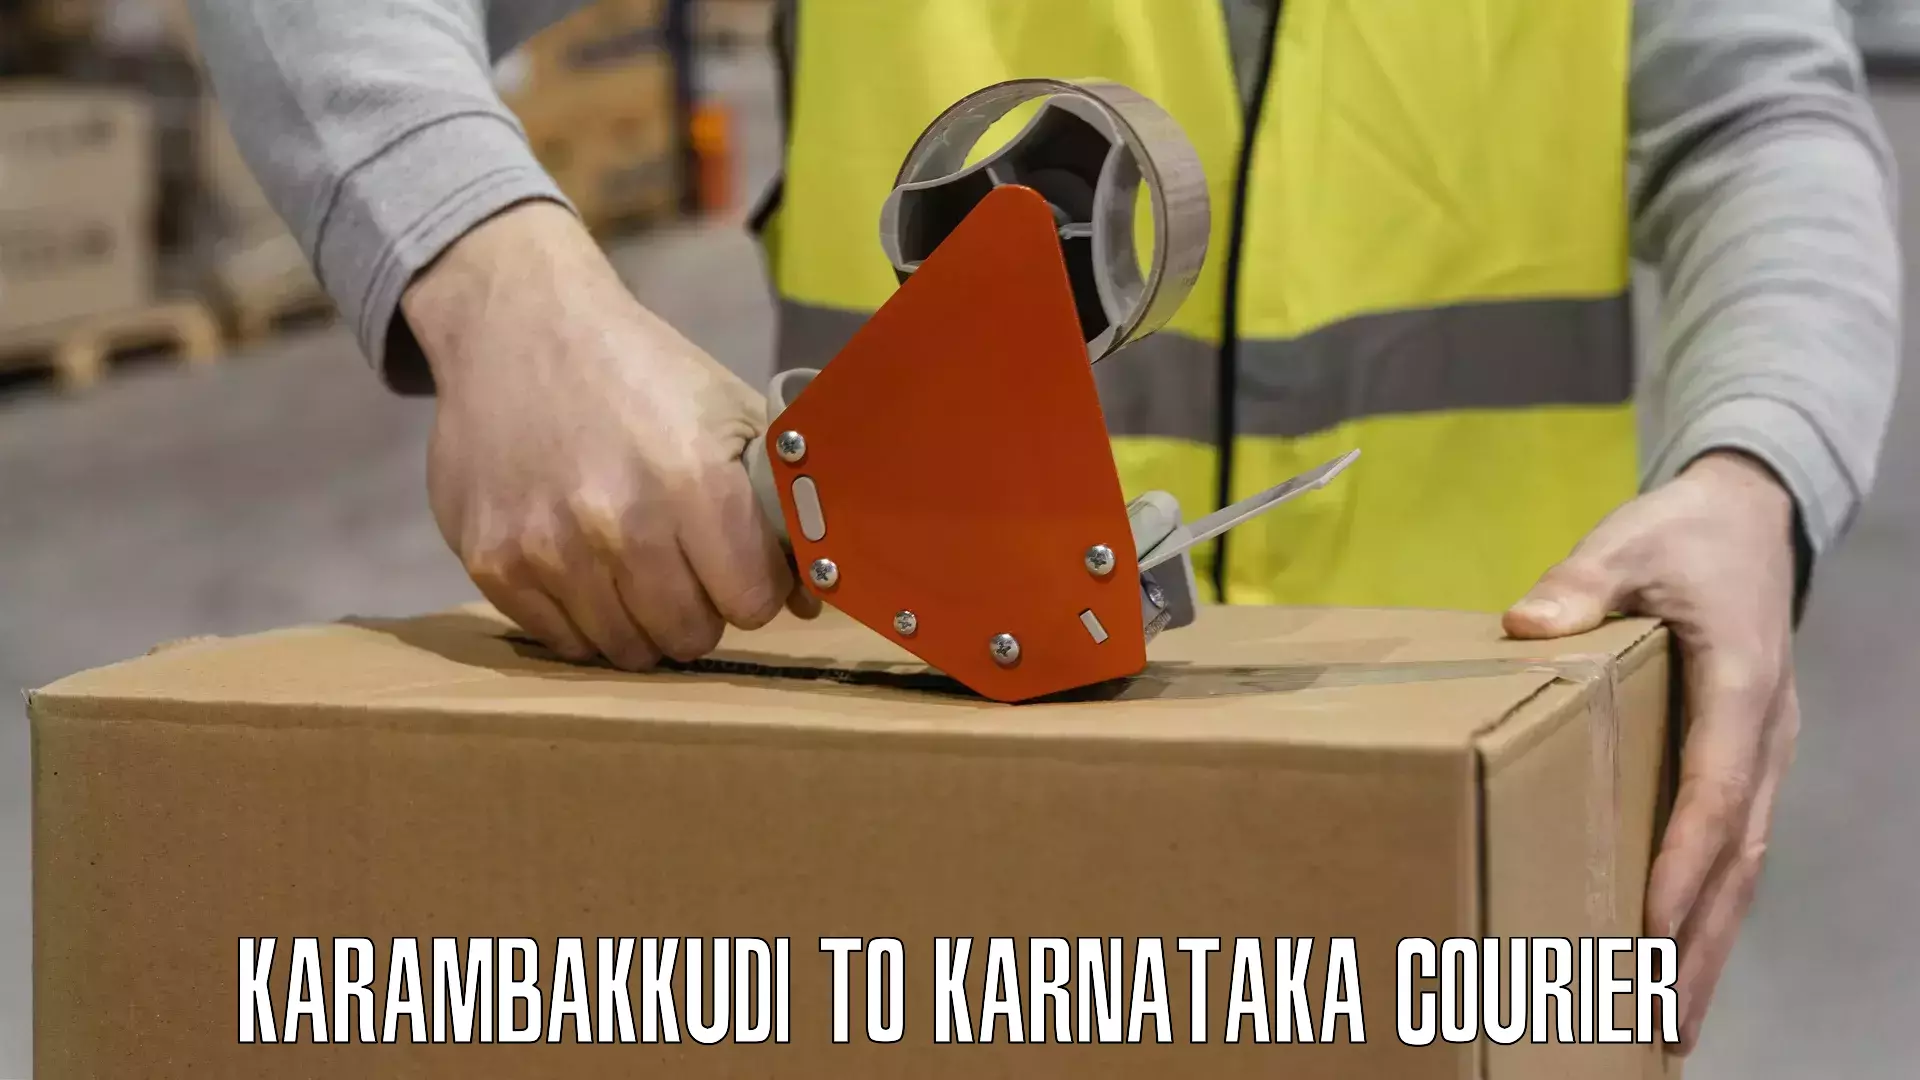 Flexible delivery schedules Karambakkudi to Ankola